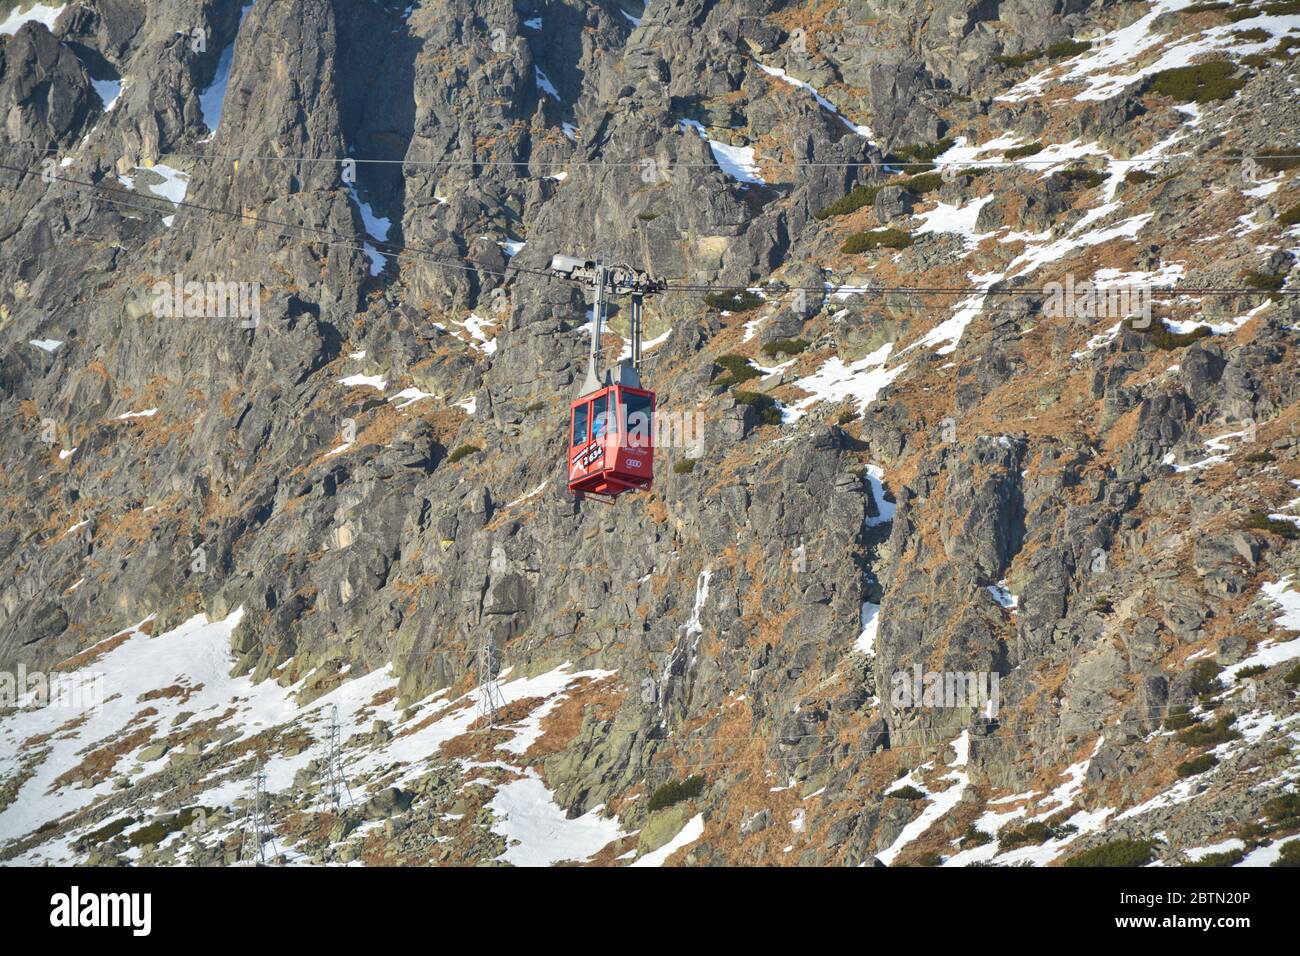 TATRANSKA LOMNICA, SLOWAKEI - 1. JANUAR 2016: Rote Seilbahn zum Gipfel des Lomnicky Stot. Sie ist eine der steilsten Seilbahnen Europas Stockfoto